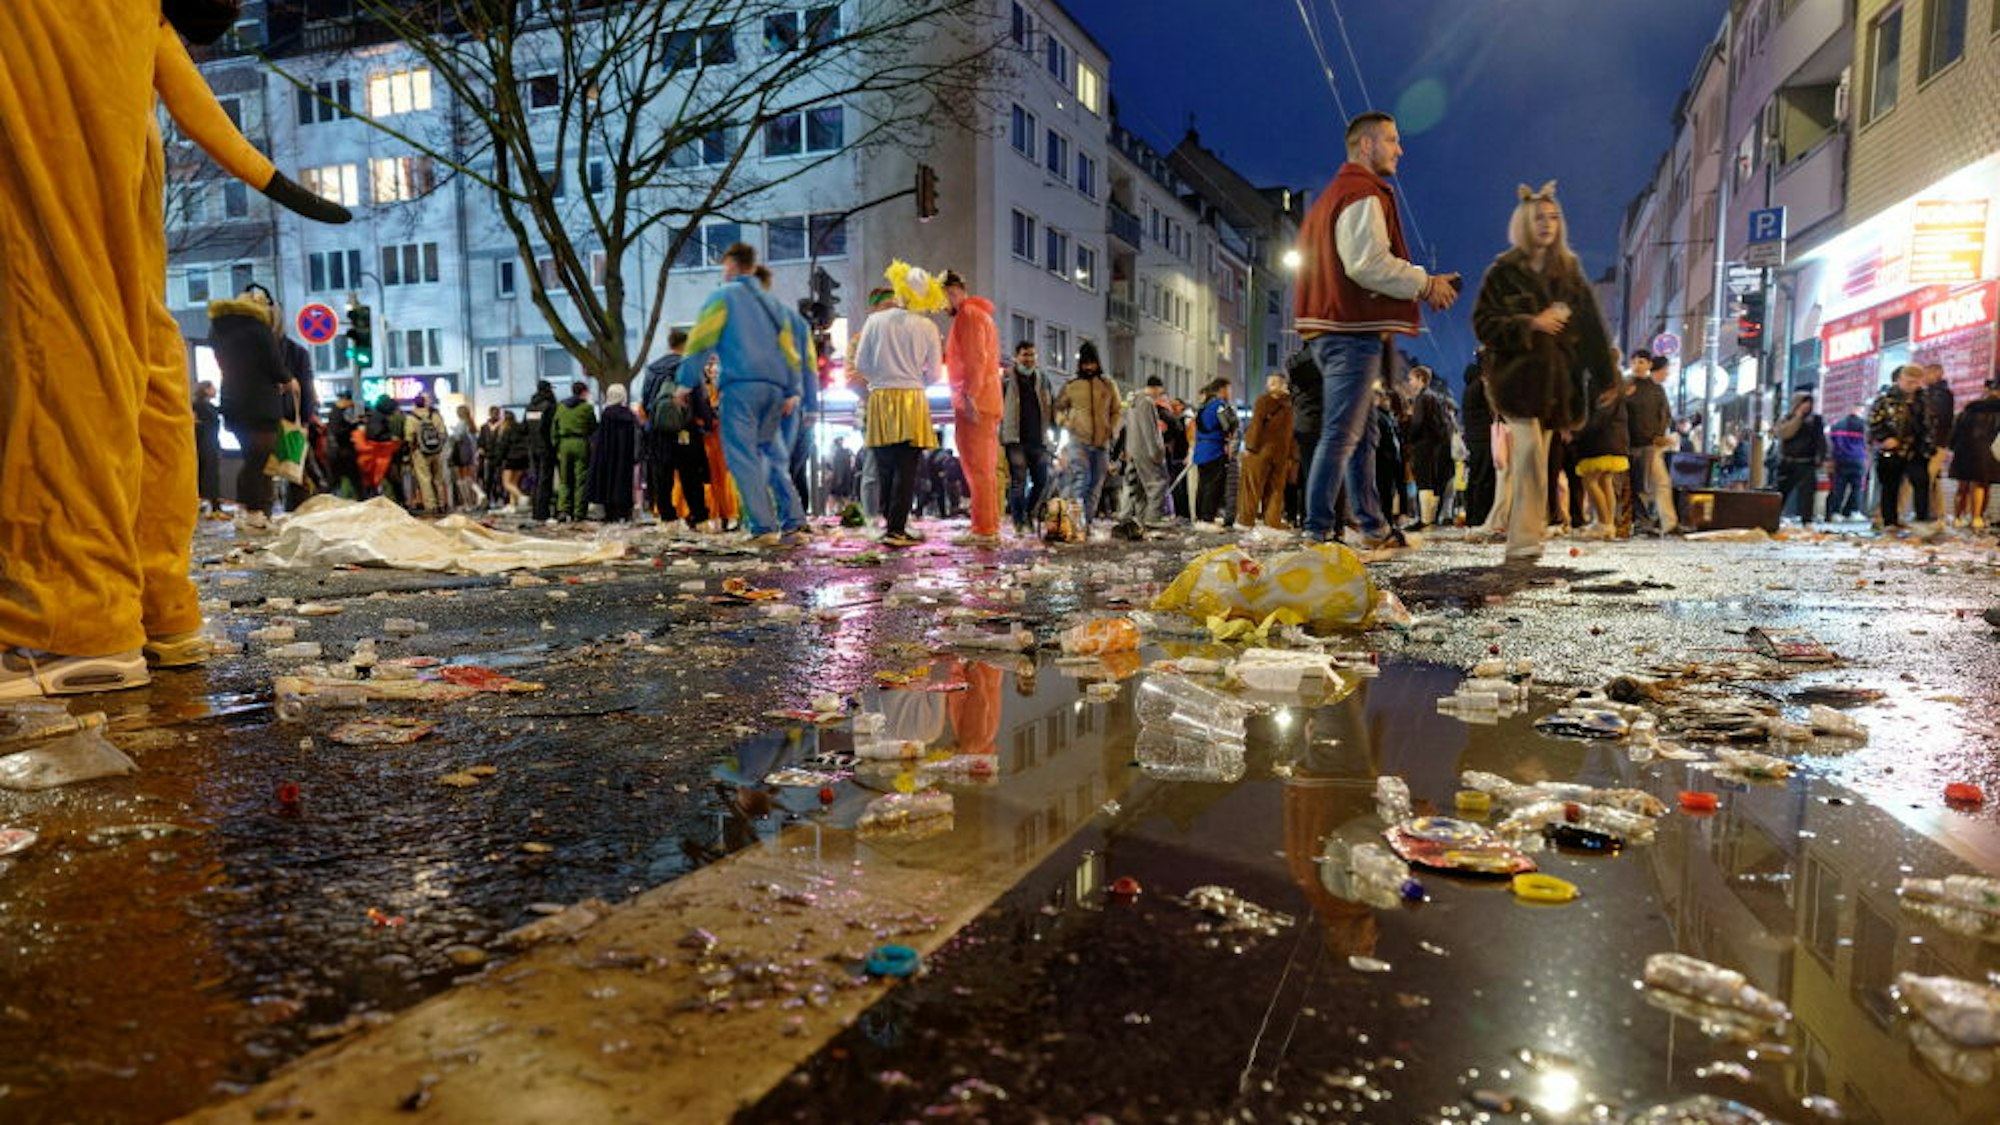 Müll liegt am späten Abend auf der Zülpicher Straße, im Hintergrund stehen kostümierte Menschen in kleinen Gruppen zusammen.